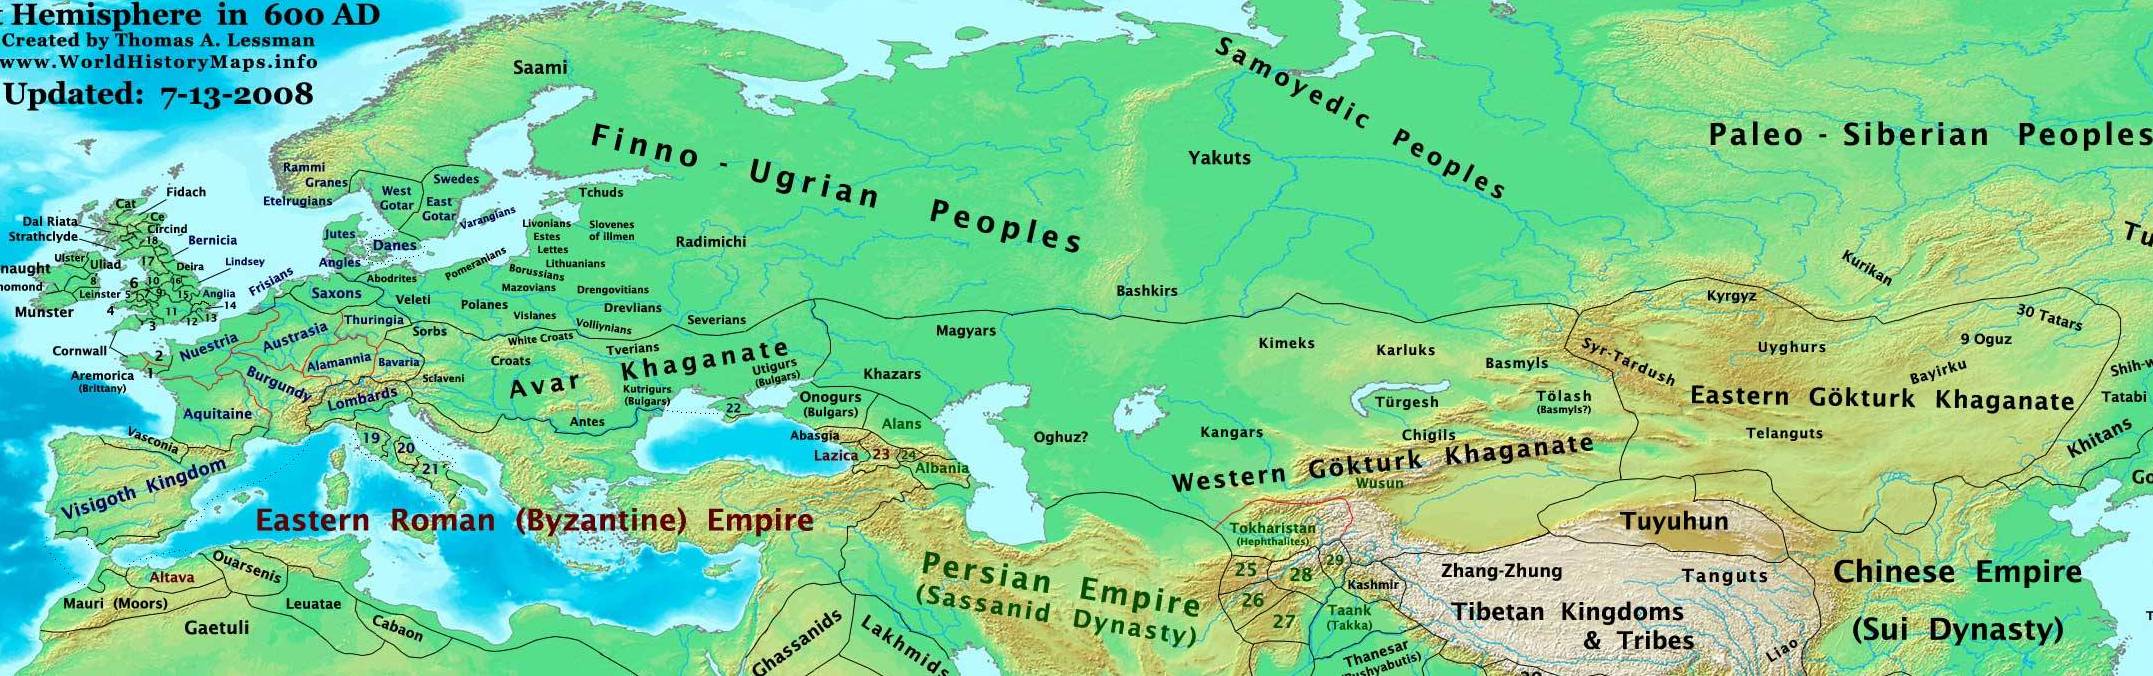 Аварский, Западно- и Восточно-тюркский каганаты в начале 7 века. Карта Th. Lessman